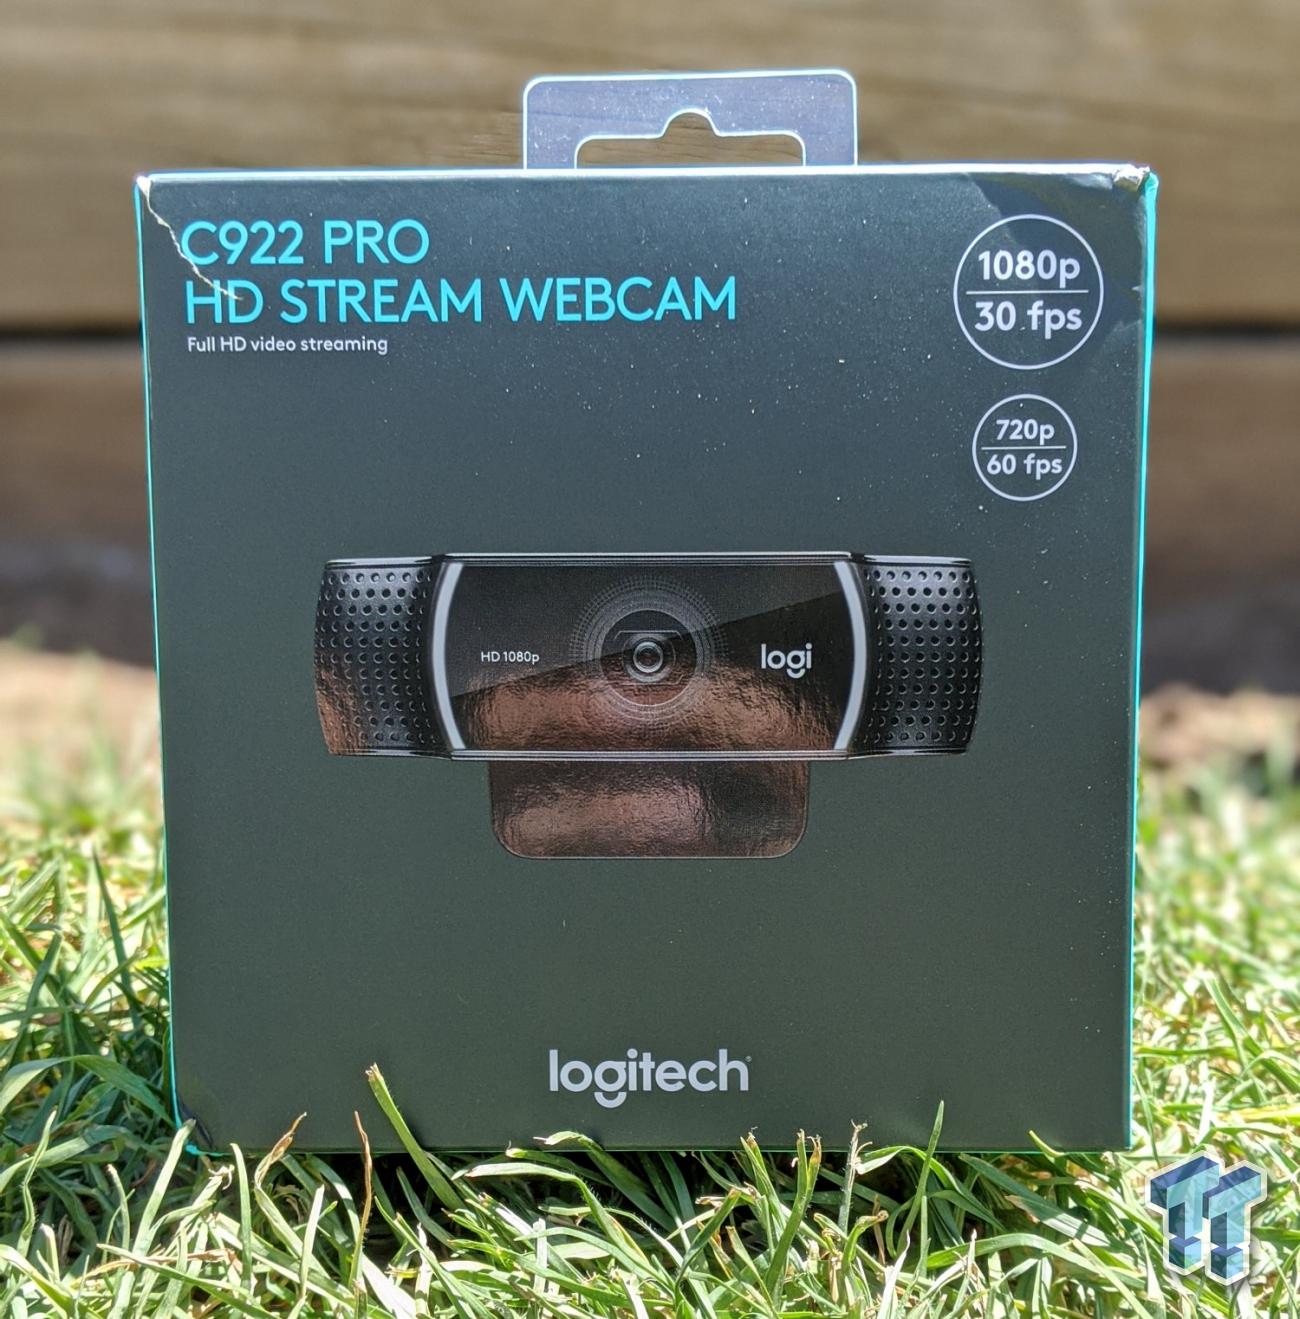 Haast je Bot Inzichtelijk Logitech C922 Pro Stream HD Webcam Review